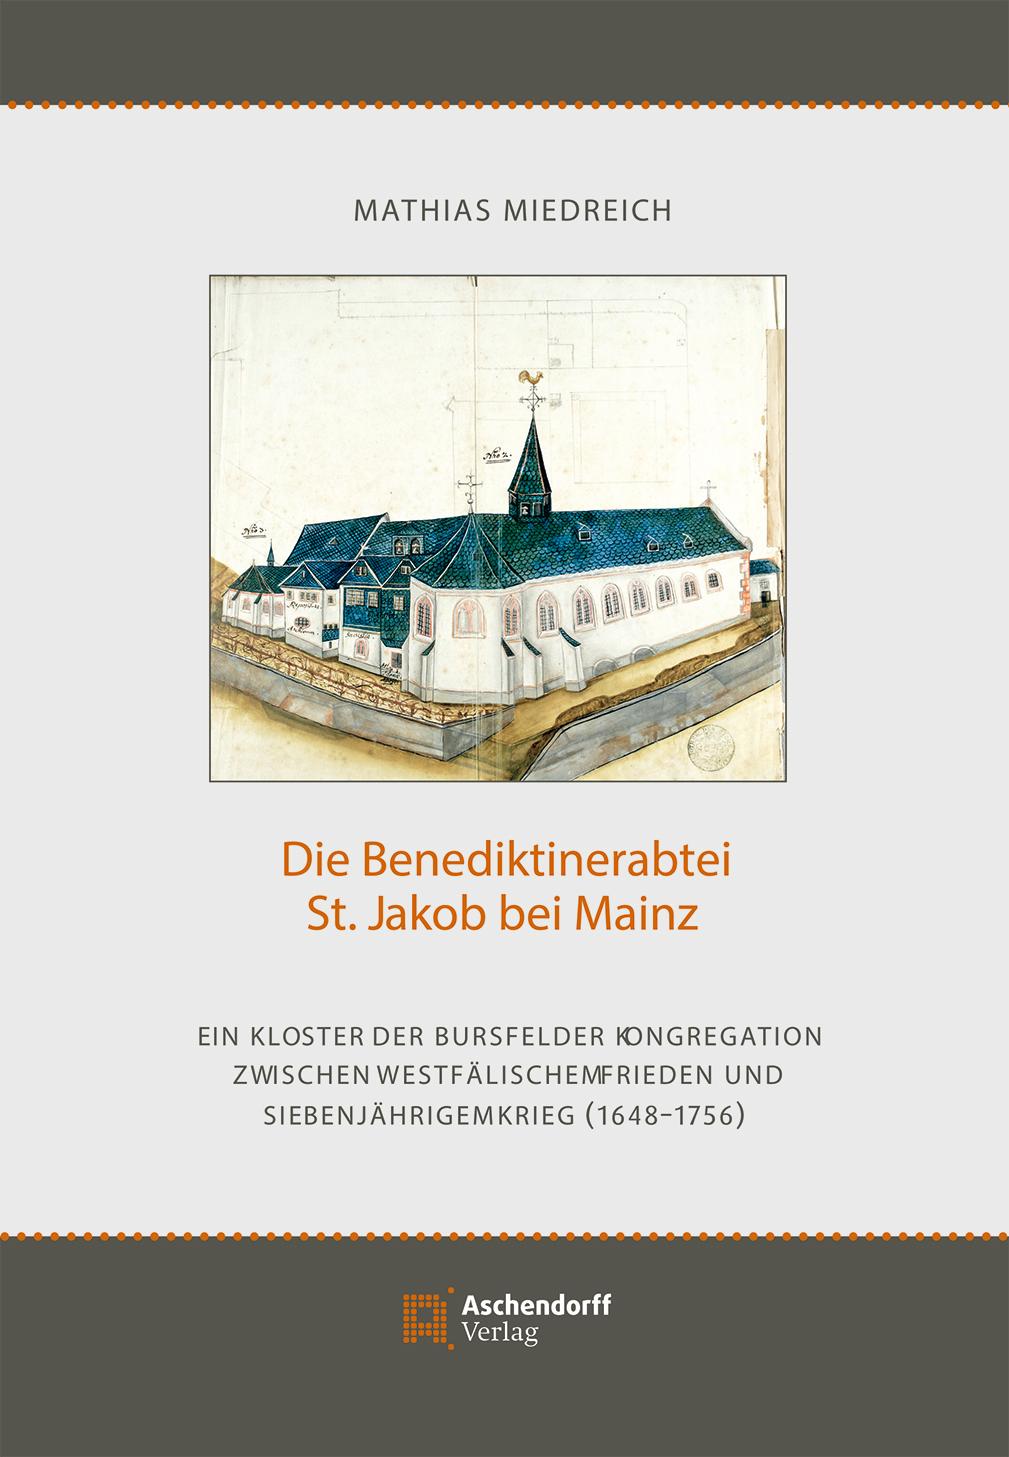 Umschlagseite Miedreich (c) GmrhKG / Aschendorff